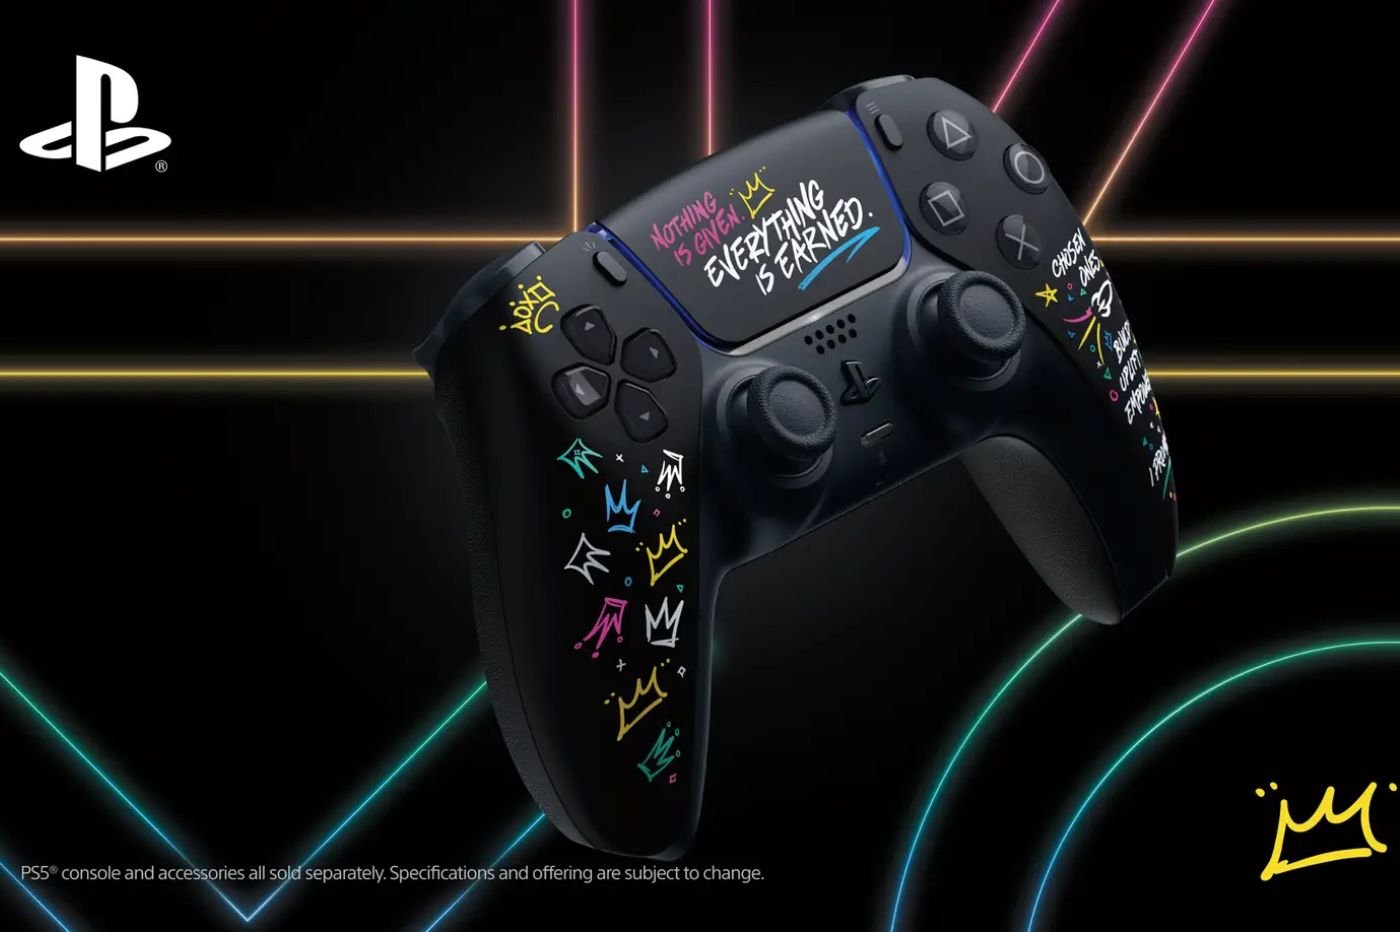 La manette PS5 officielle est disponible en promotion chez